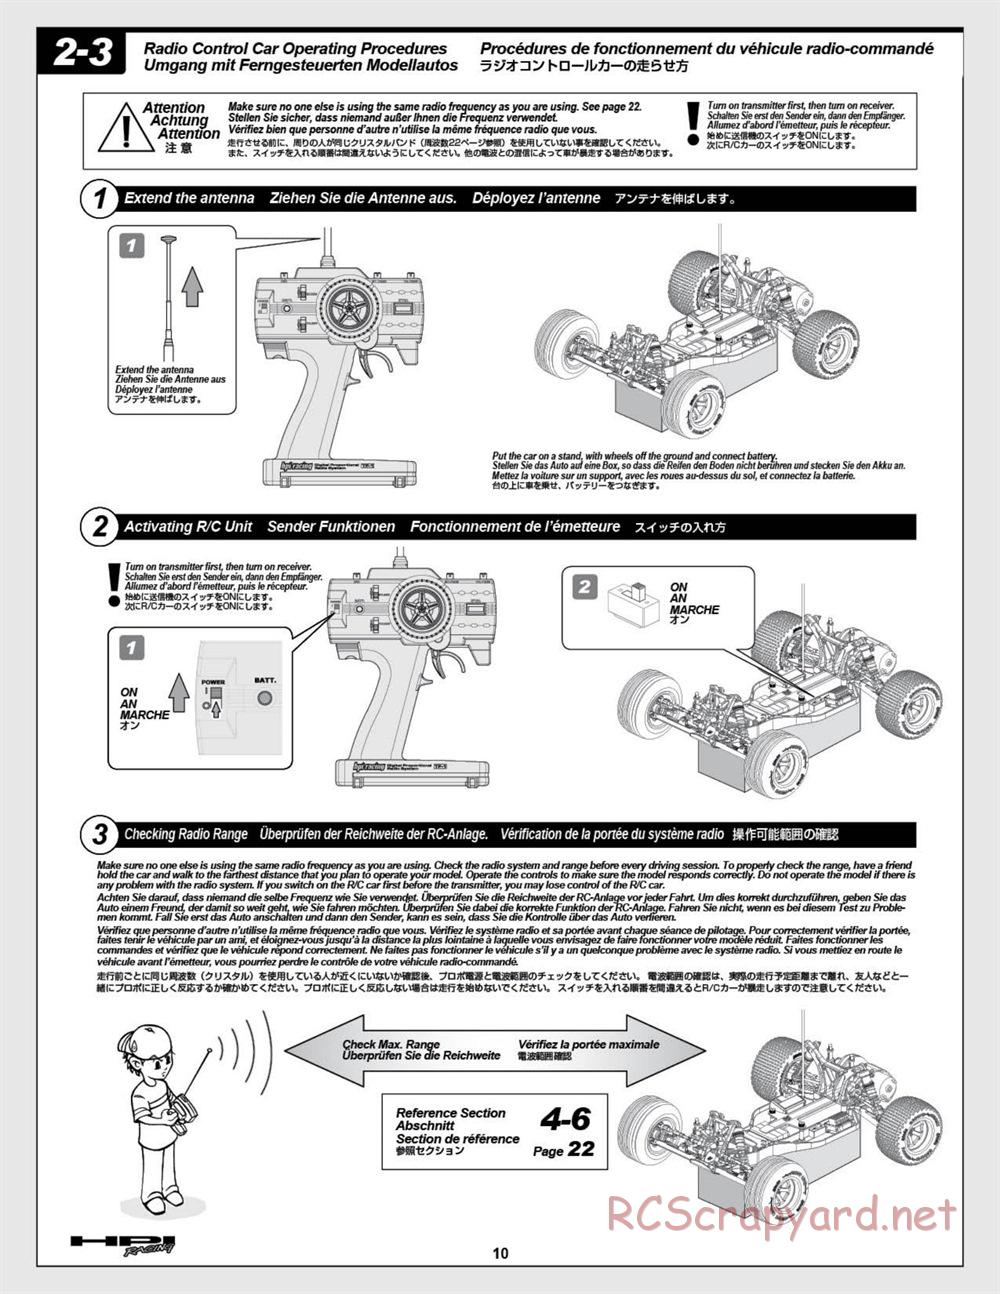 HPI - E-Firestorm 10T - Manual - Page 10